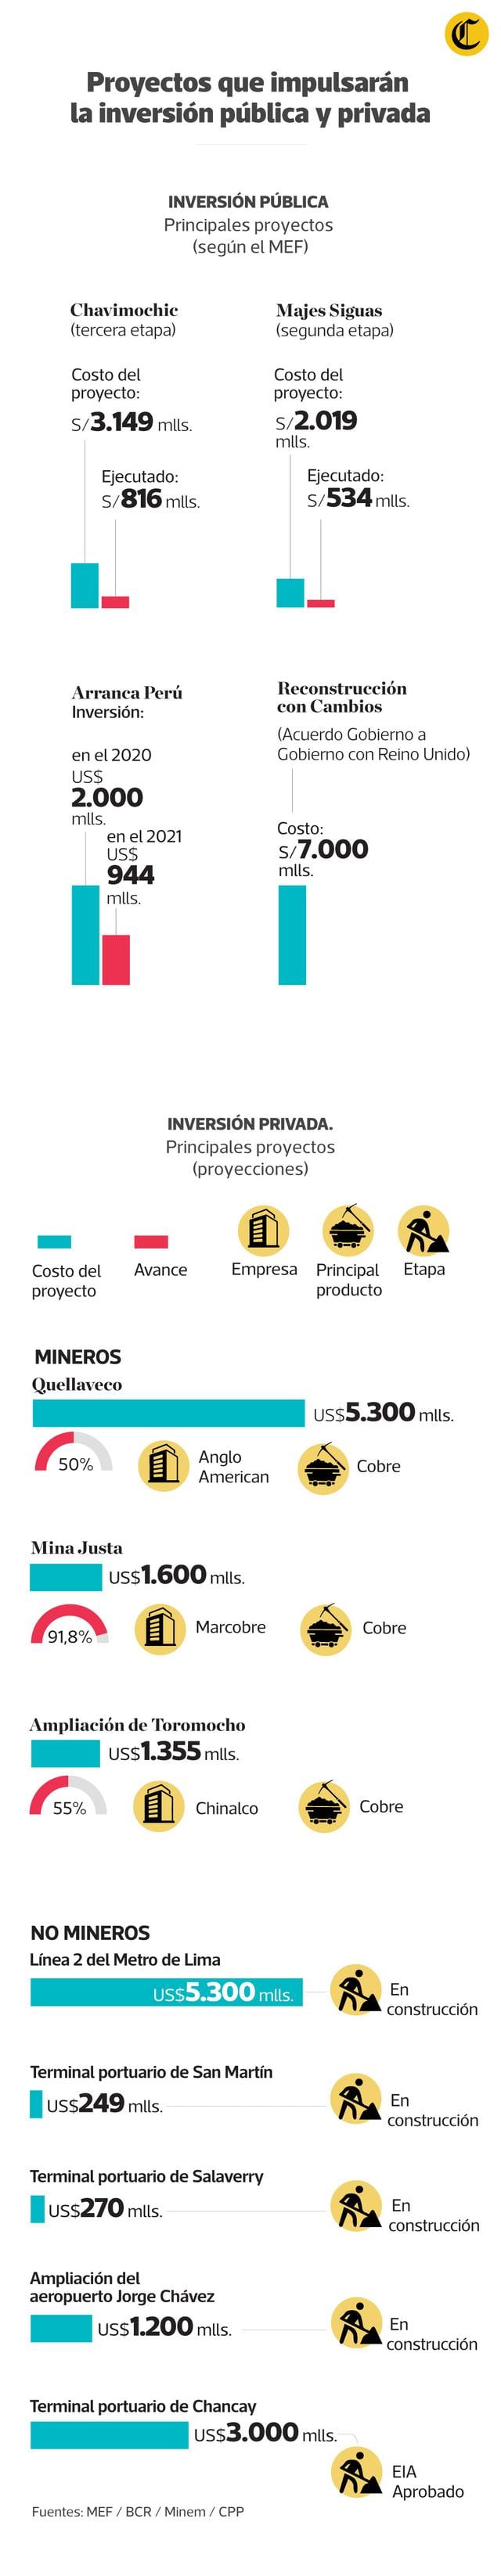 Proyectos que impulsarán la inversión pública y privada. (Infografía: El Comercio)